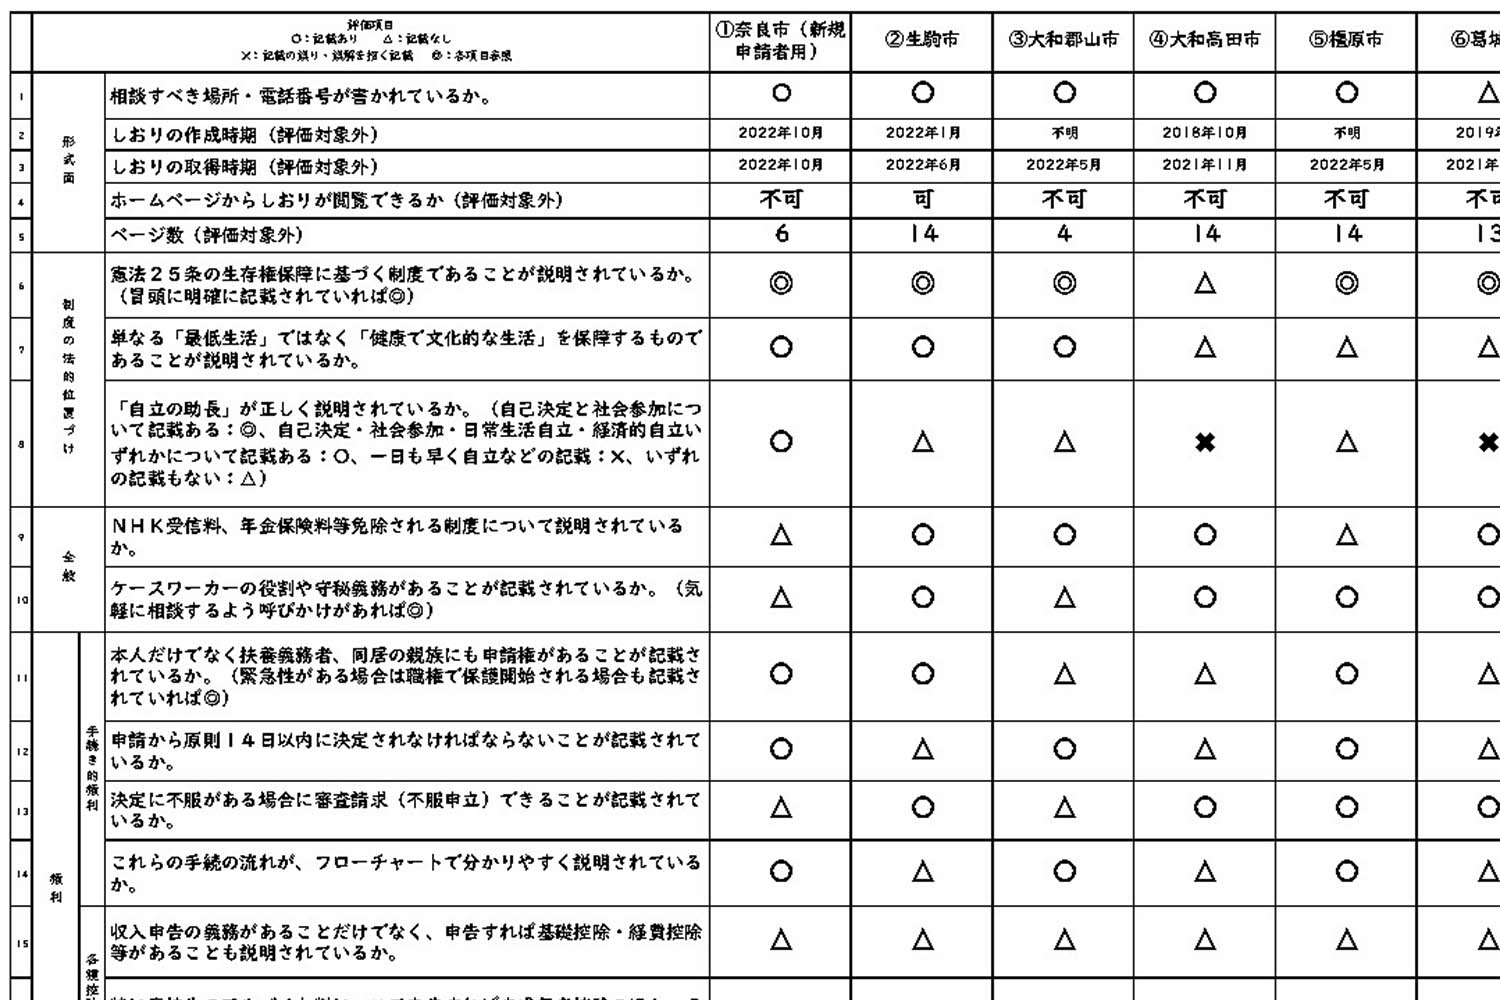 「奈良県の生活保護行政をよくする会」による奈良県内自治体の「生活保護のしおり」の点検結果の一部